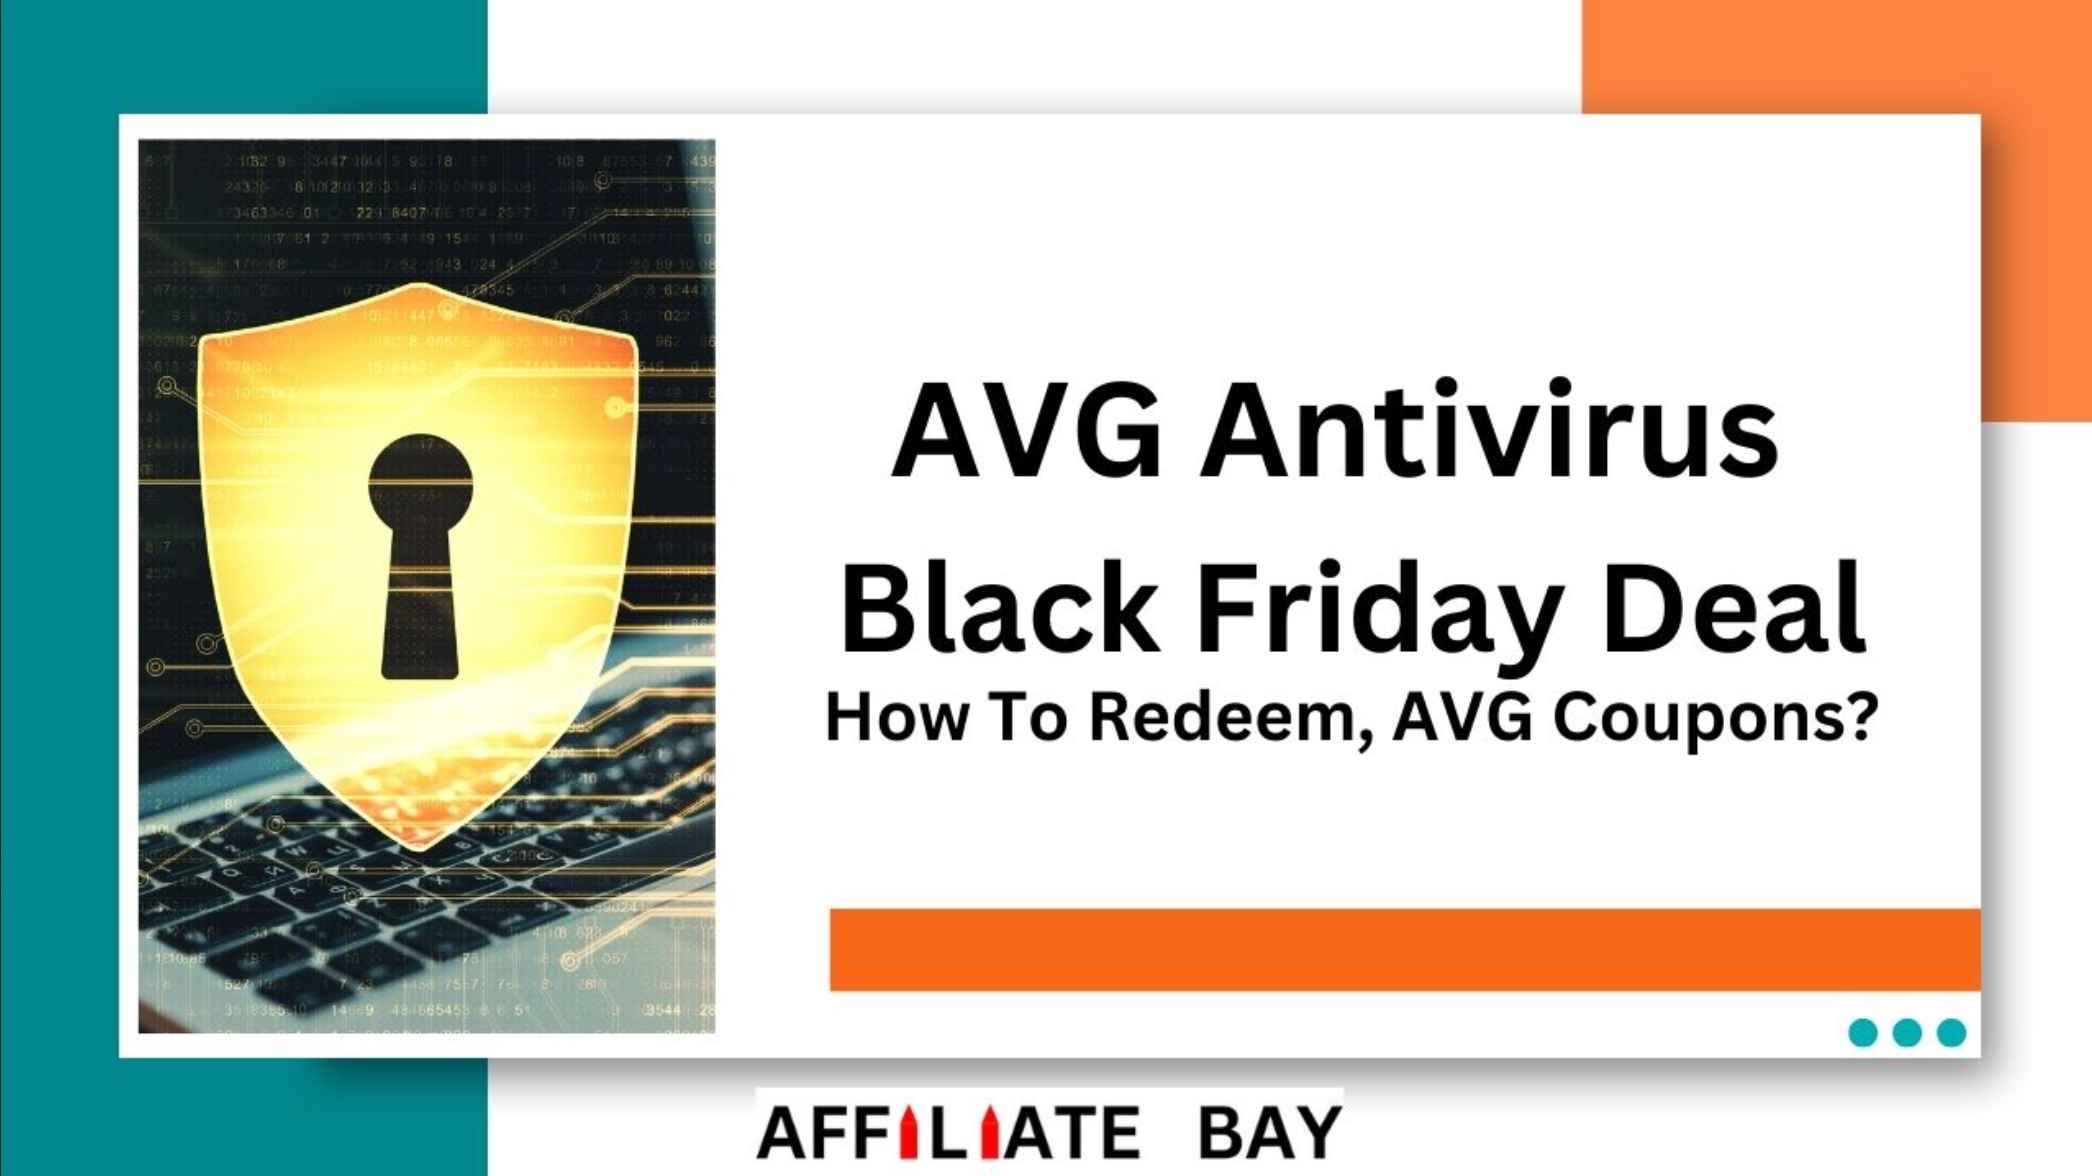 AVG Antivirus Black Friday Deal